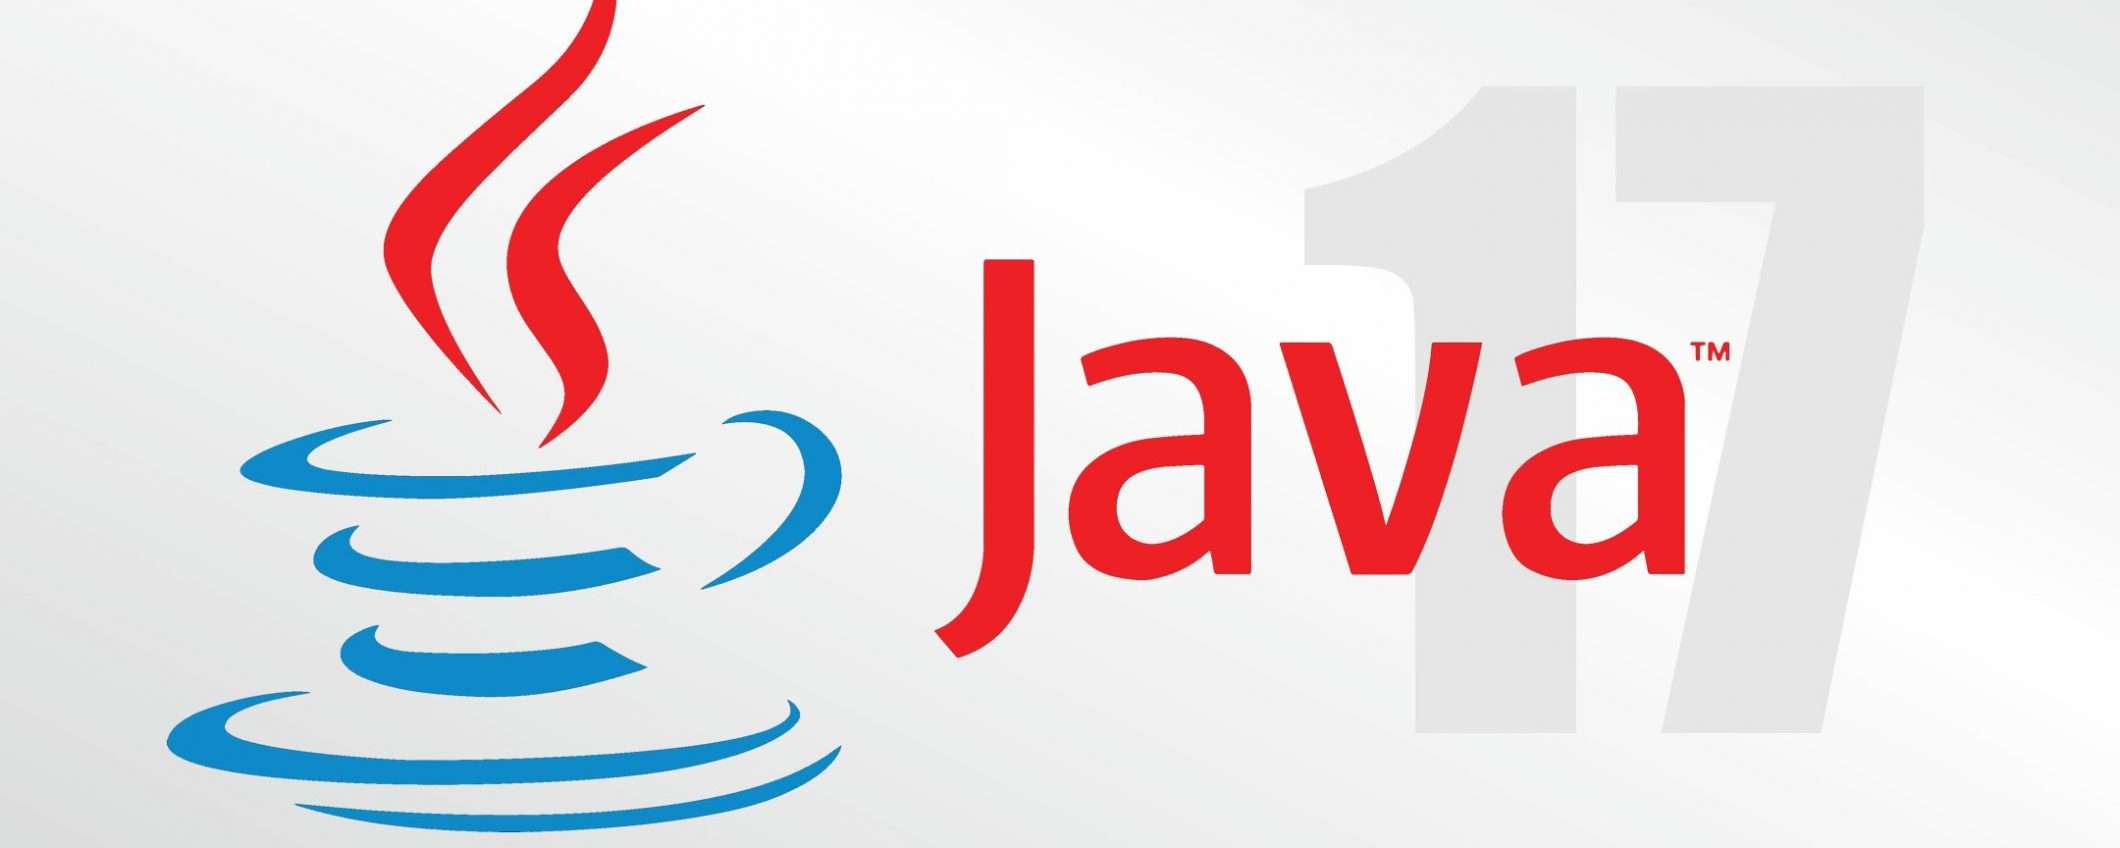 Oracle annuncia Java 17